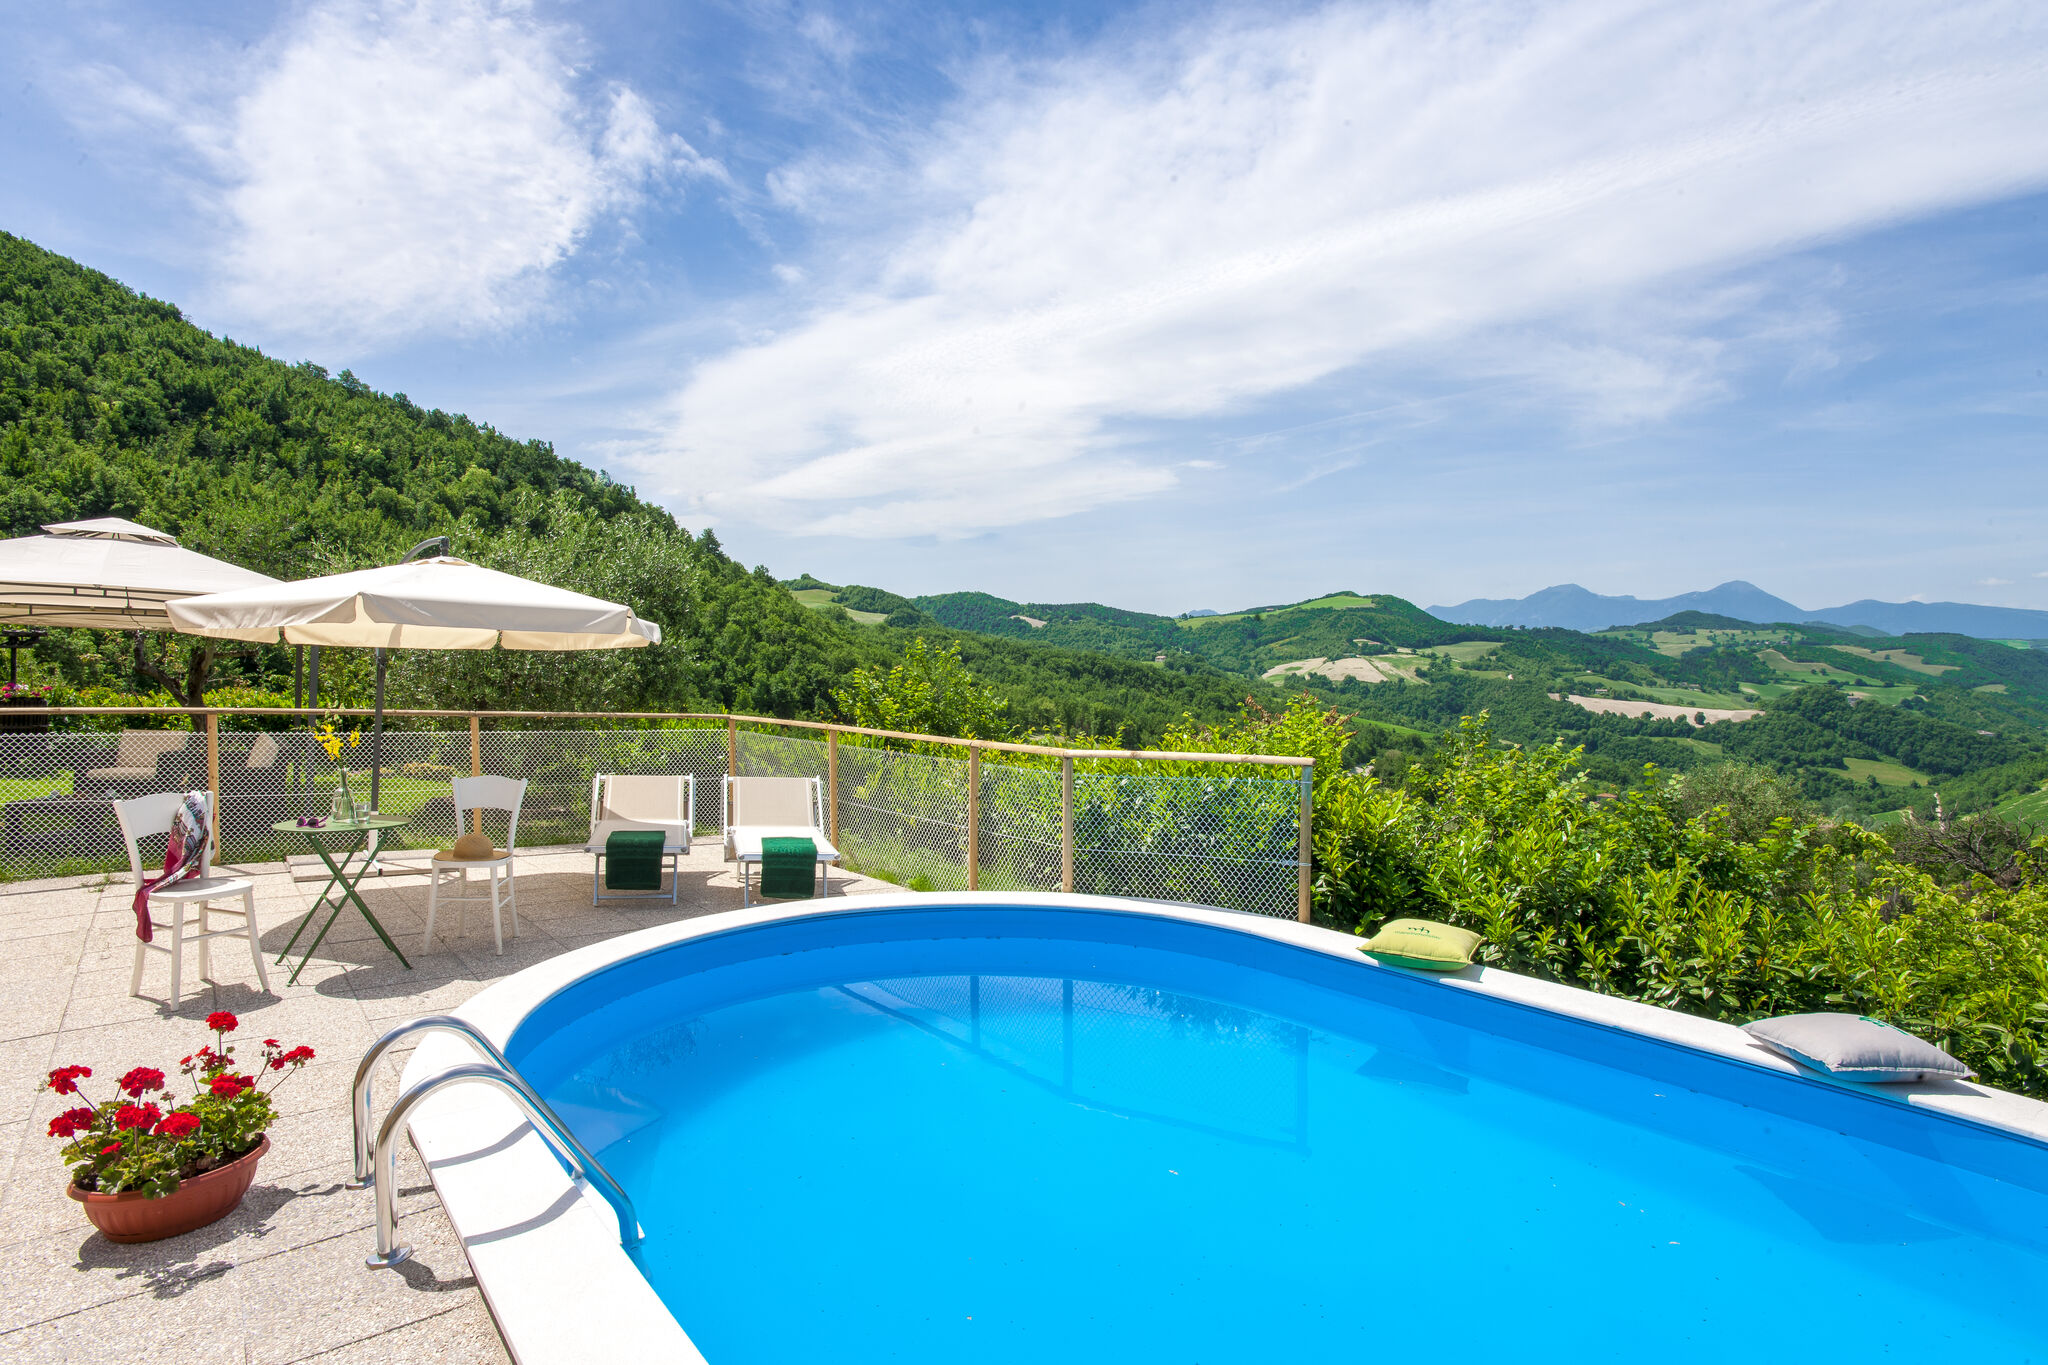 Breathtaking Villa in Pergola with Private Swimming Pool